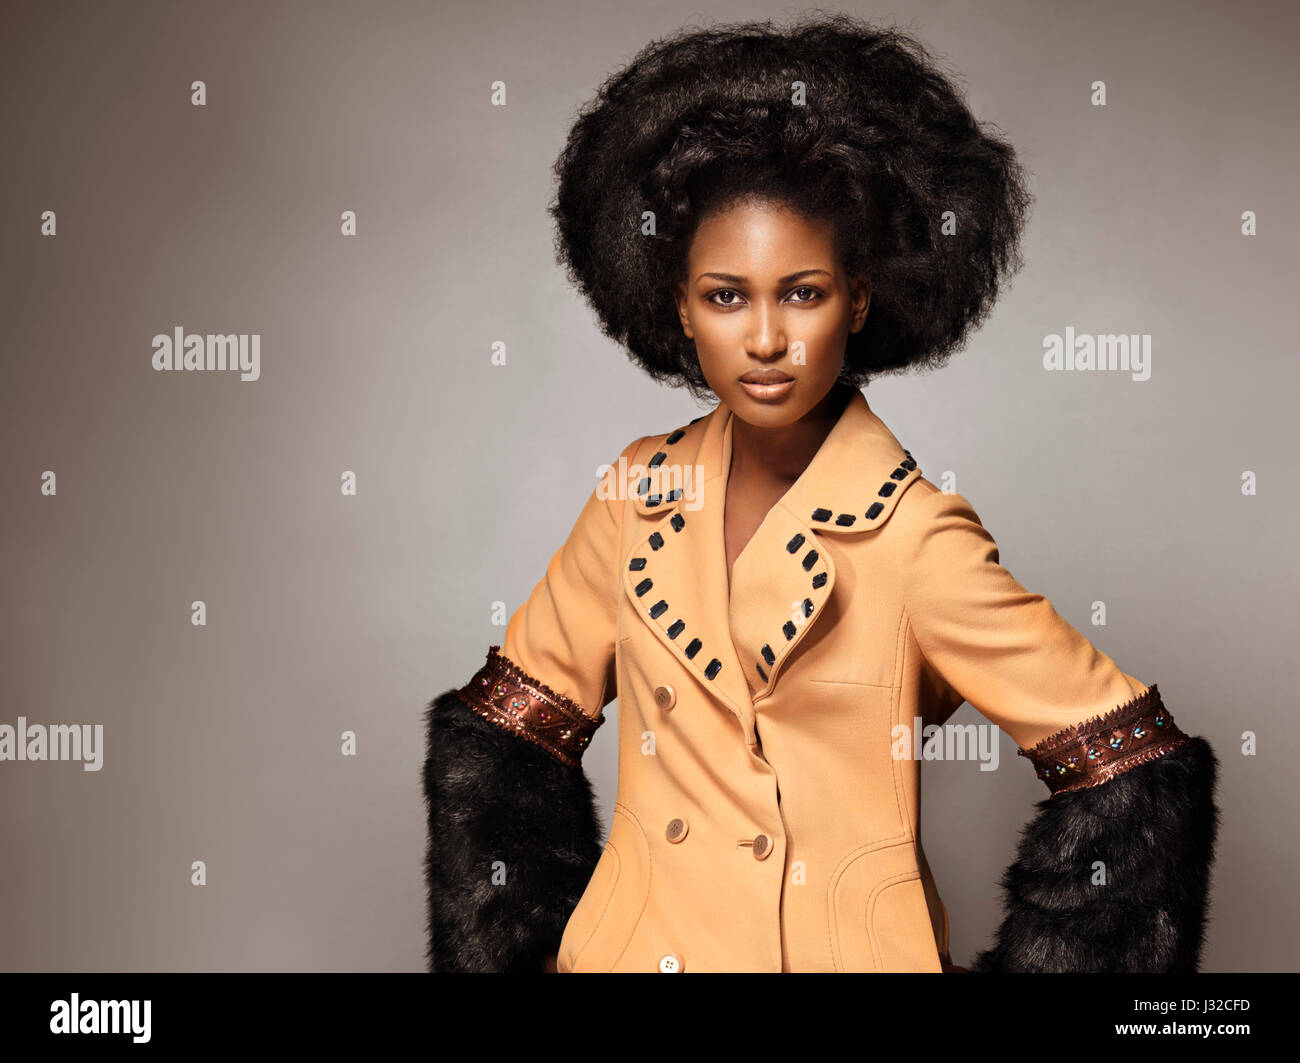 Führerschein und Fingerabdrücke auf MaximImages.com - Modeporträt einer schwarzen afroamerikanischen Frau, die einen orangefarbenen Mantel mit schwarzem Fell auf g trägt Stockfoto